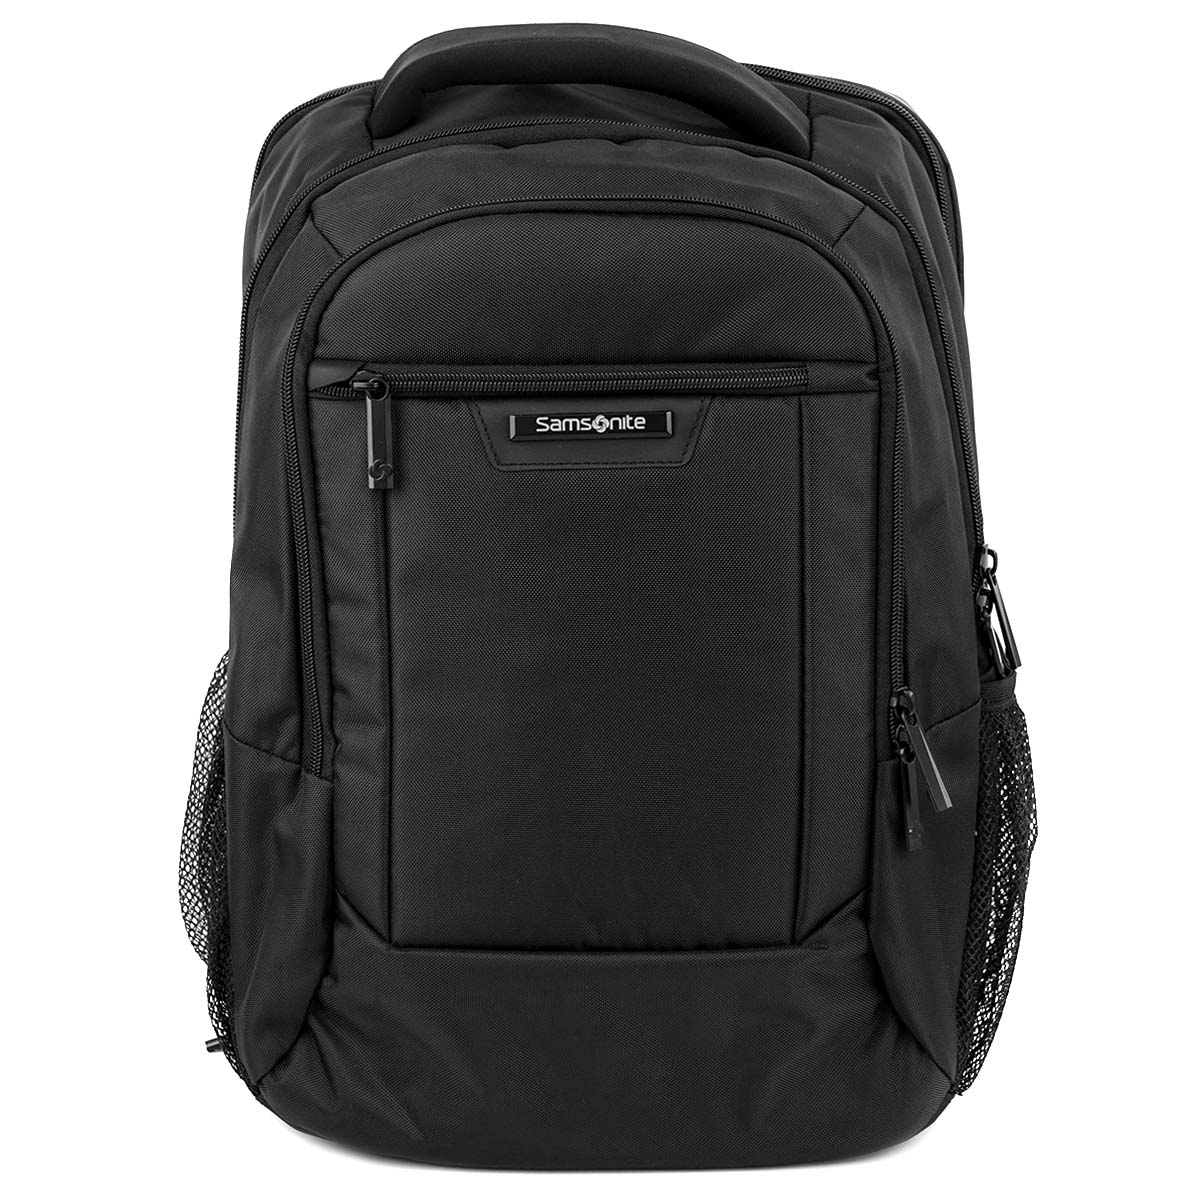 【後払い可】バックパック samsonite サムソナイト 141277-1041 CLASSIC 2.0 Standard Backpack(15.6) メンズ 男性 ビジネスバッグ リュック BLACK ブラック